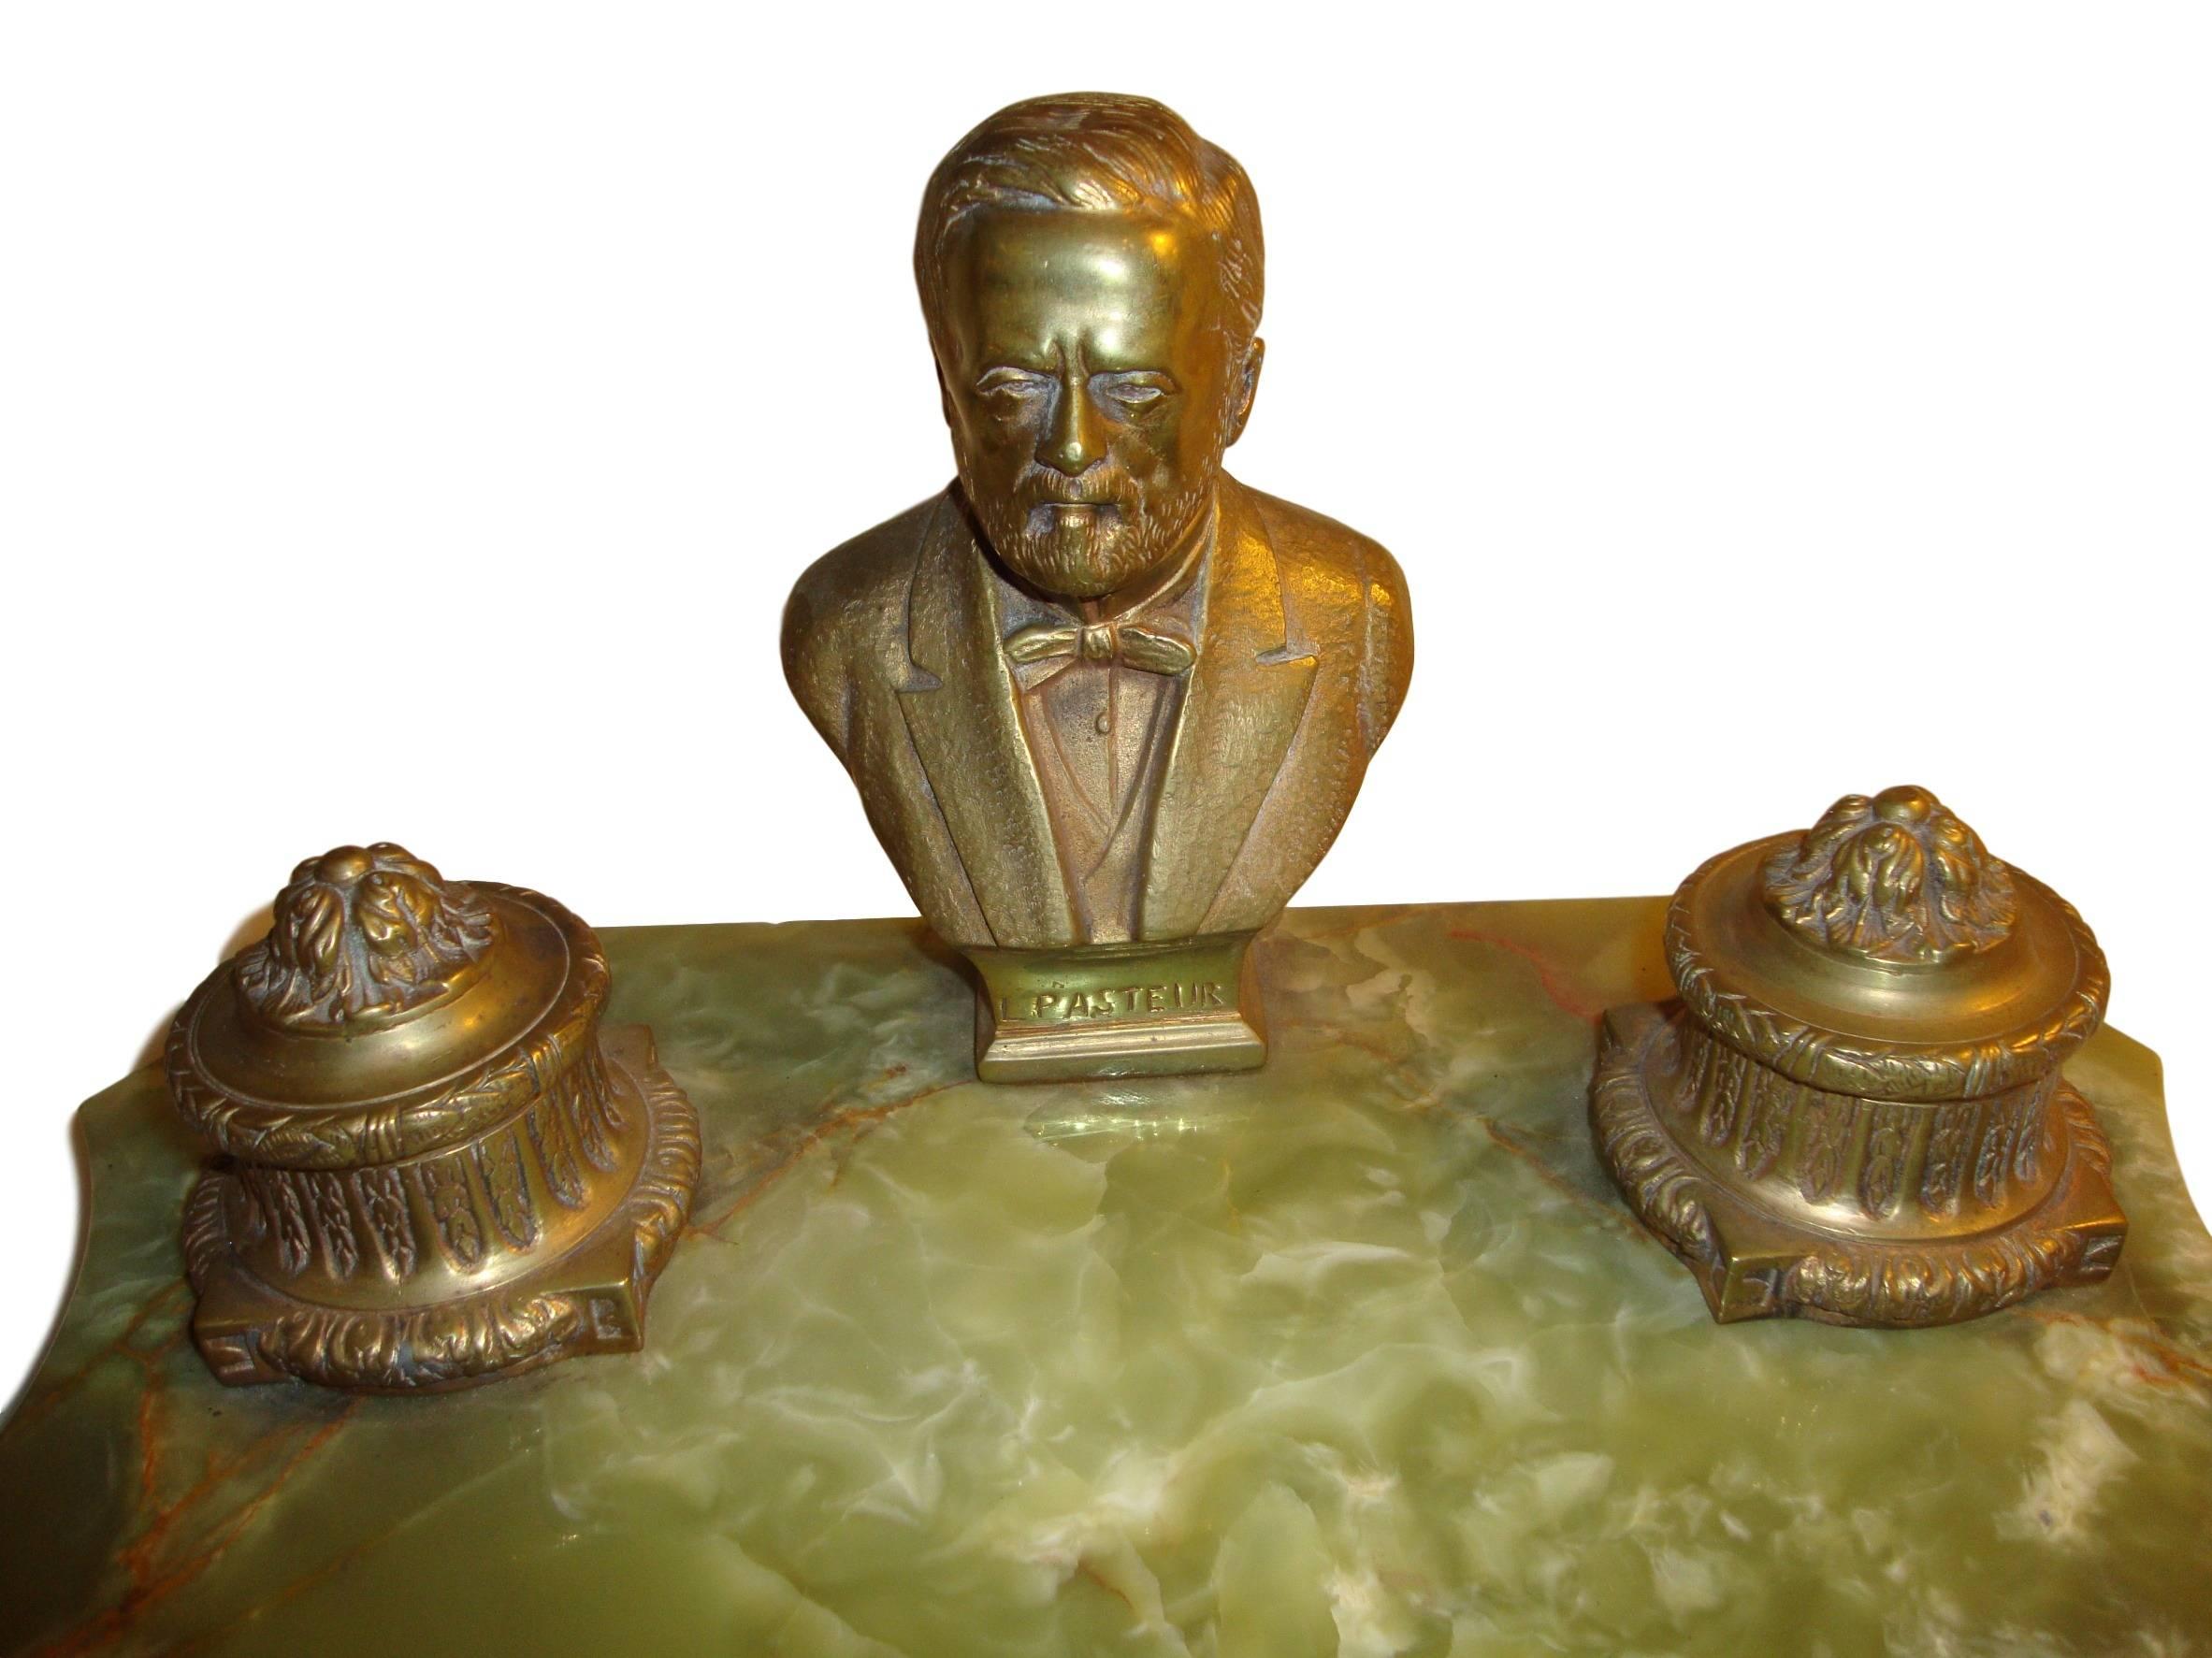 Tintenfass aus Onyx und Bronze mit der Darstellung von Louis Pasteur. Eine schön gegossene Bronze mit doppelten Tintenbehältern auf einem Onyx-Federhalter und Bleistiftsockel.